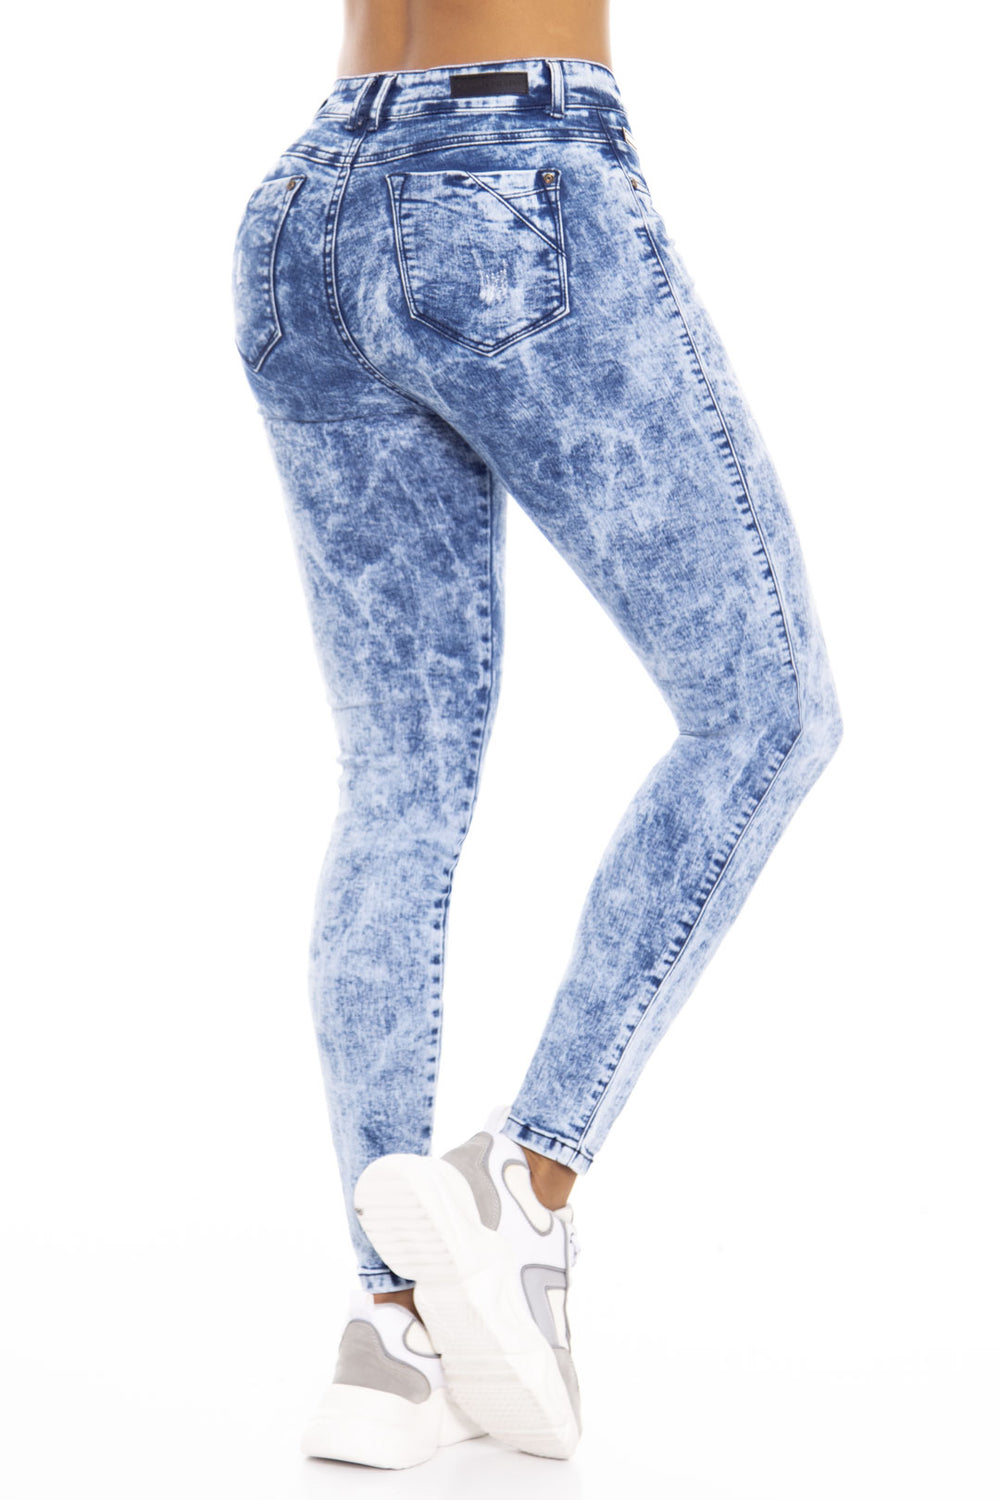 Jeans Levanta Cola Azul Carlos Prada 6112 | Colombiana de jeans